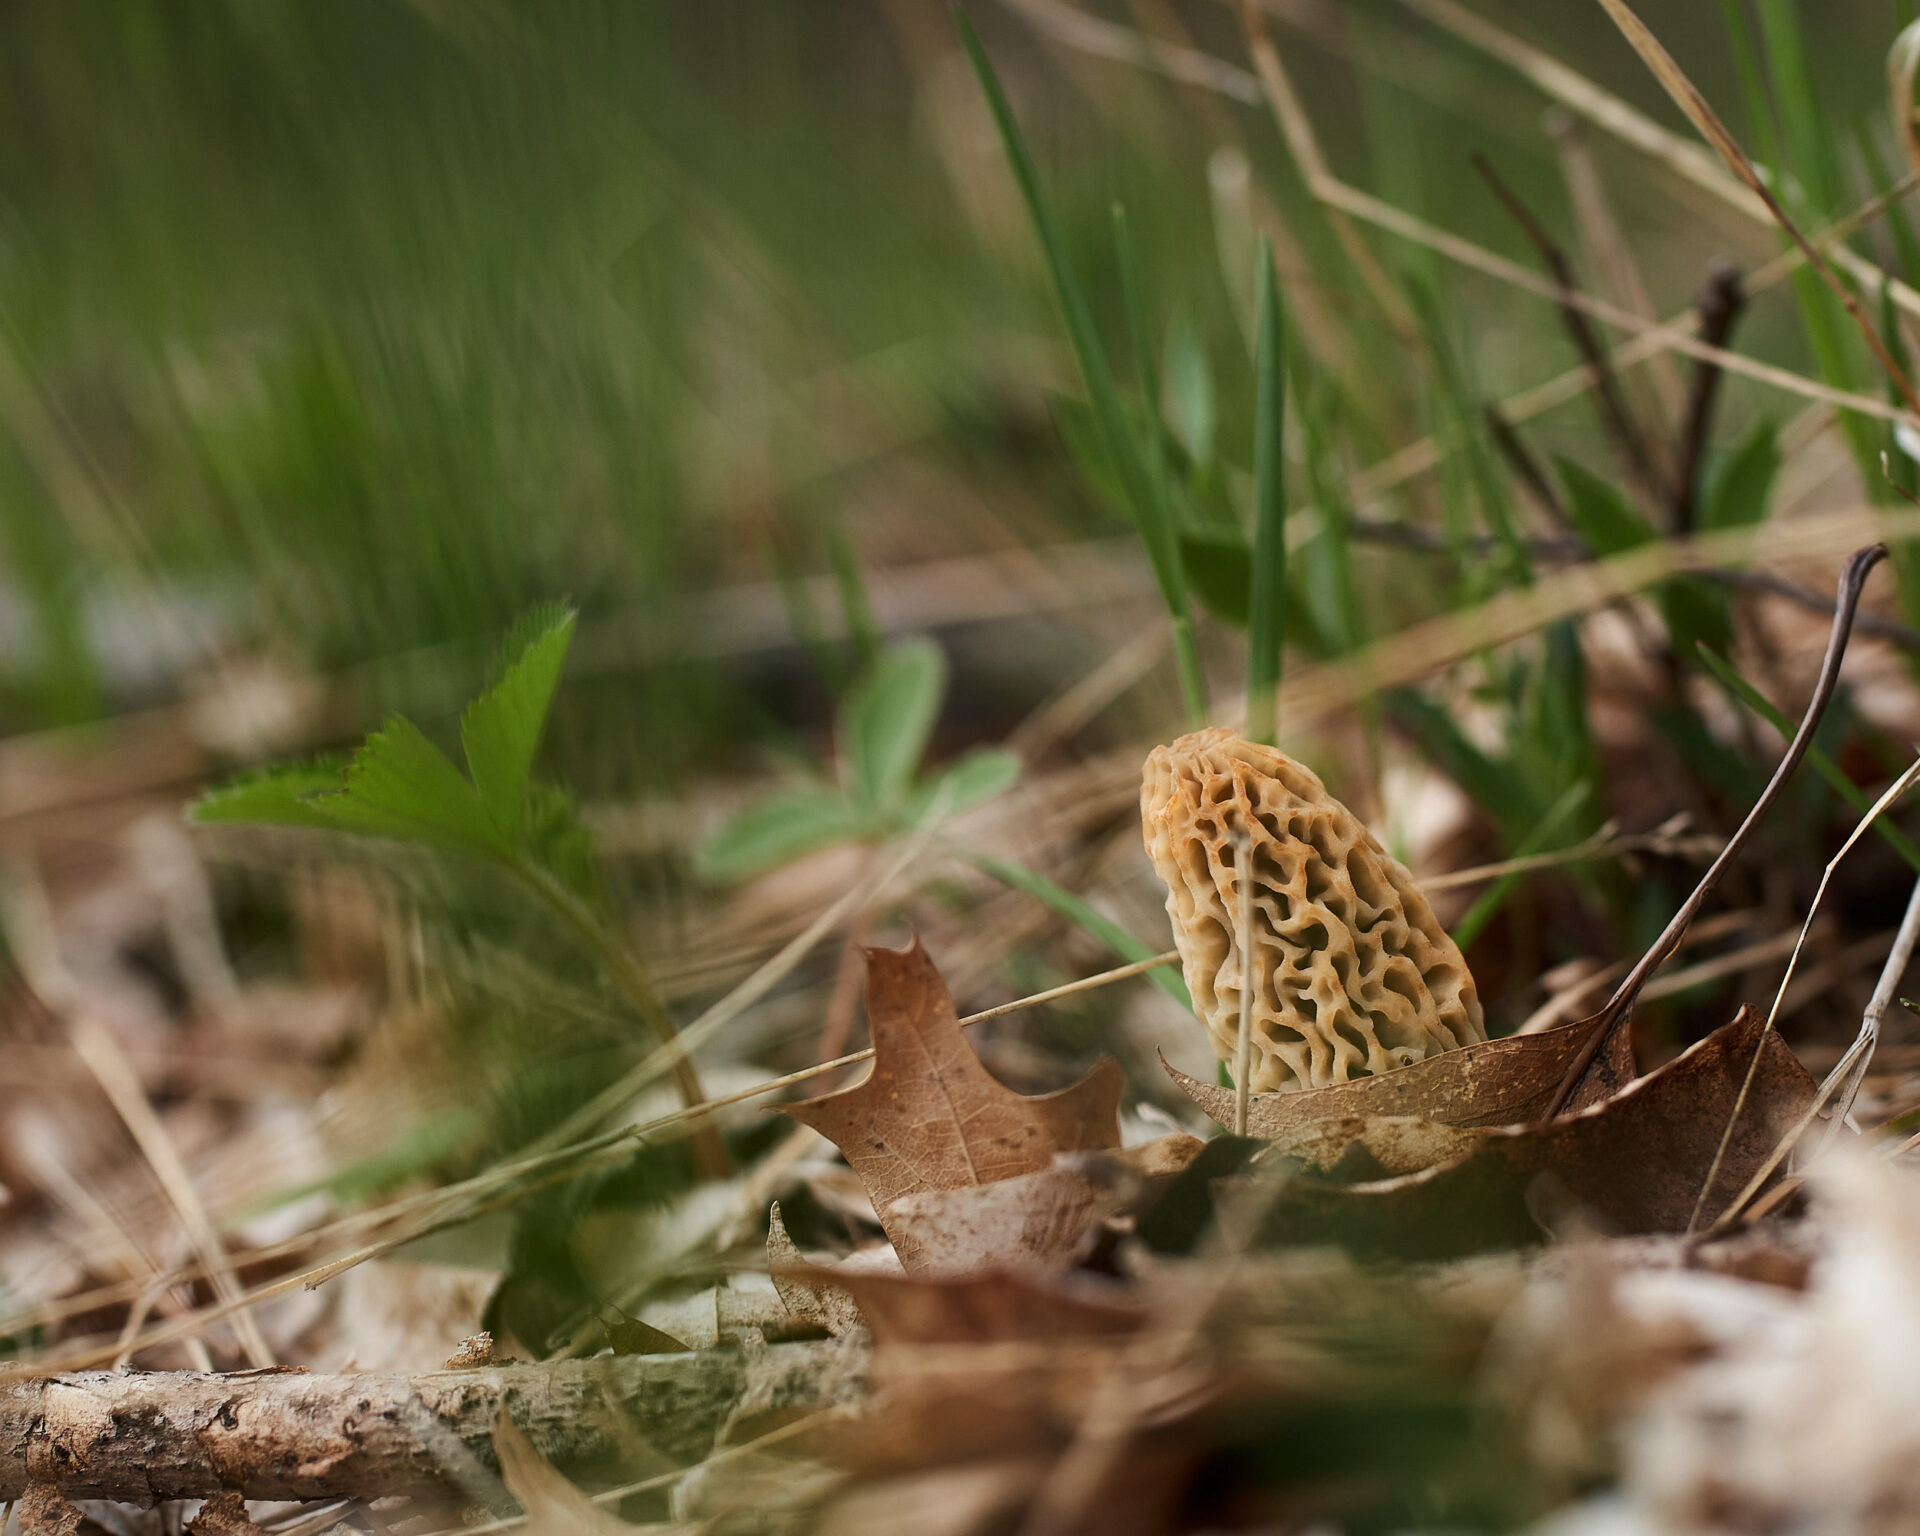 morel mushroom in grassy area